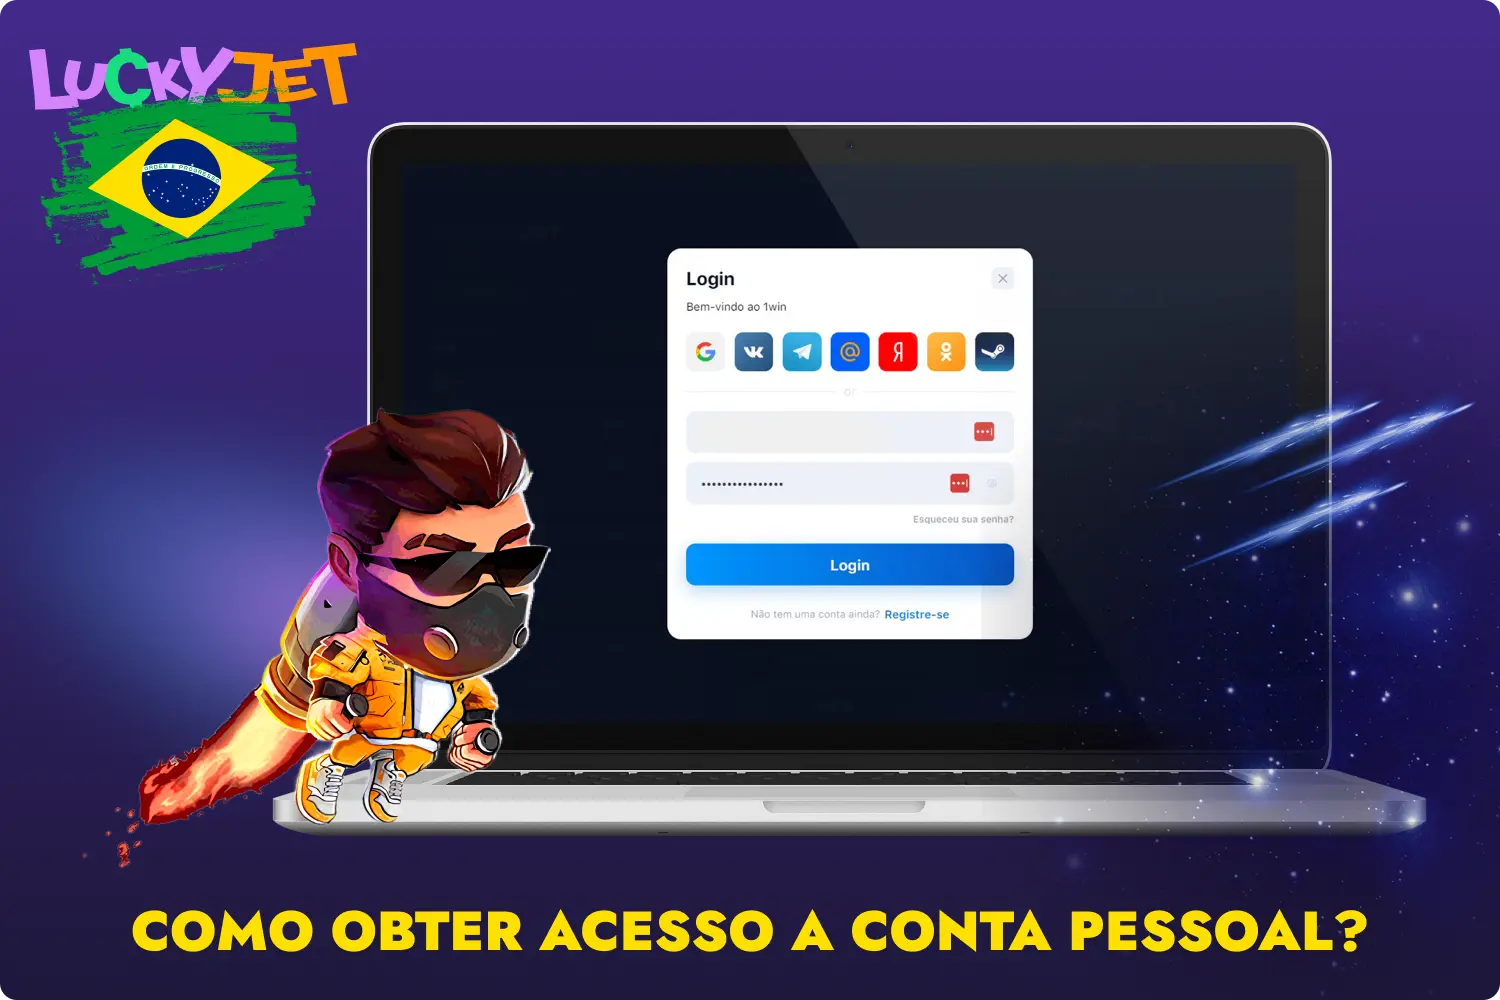 Sempre que um utilizador do Brasil visitar o sítio Web da 1win, ser-lhe-á pedido que inicie sessão, após o que poderá jogar Lucky Jet